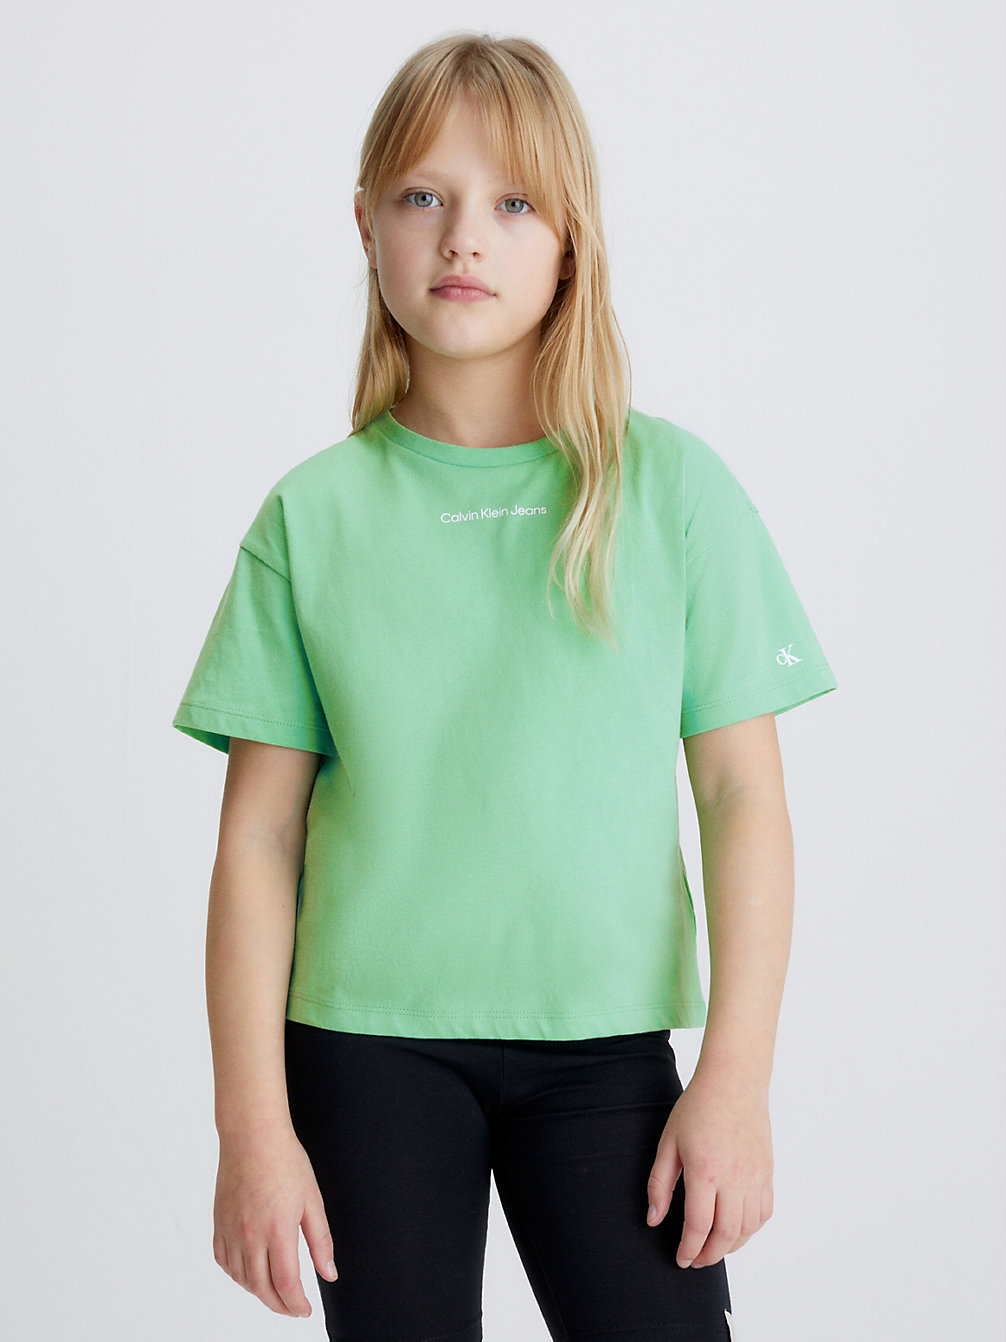 NEPTUNES WAVE Kastiges T-Shirt Aus Bio-Baumwolle undefined girls Calvin Klein